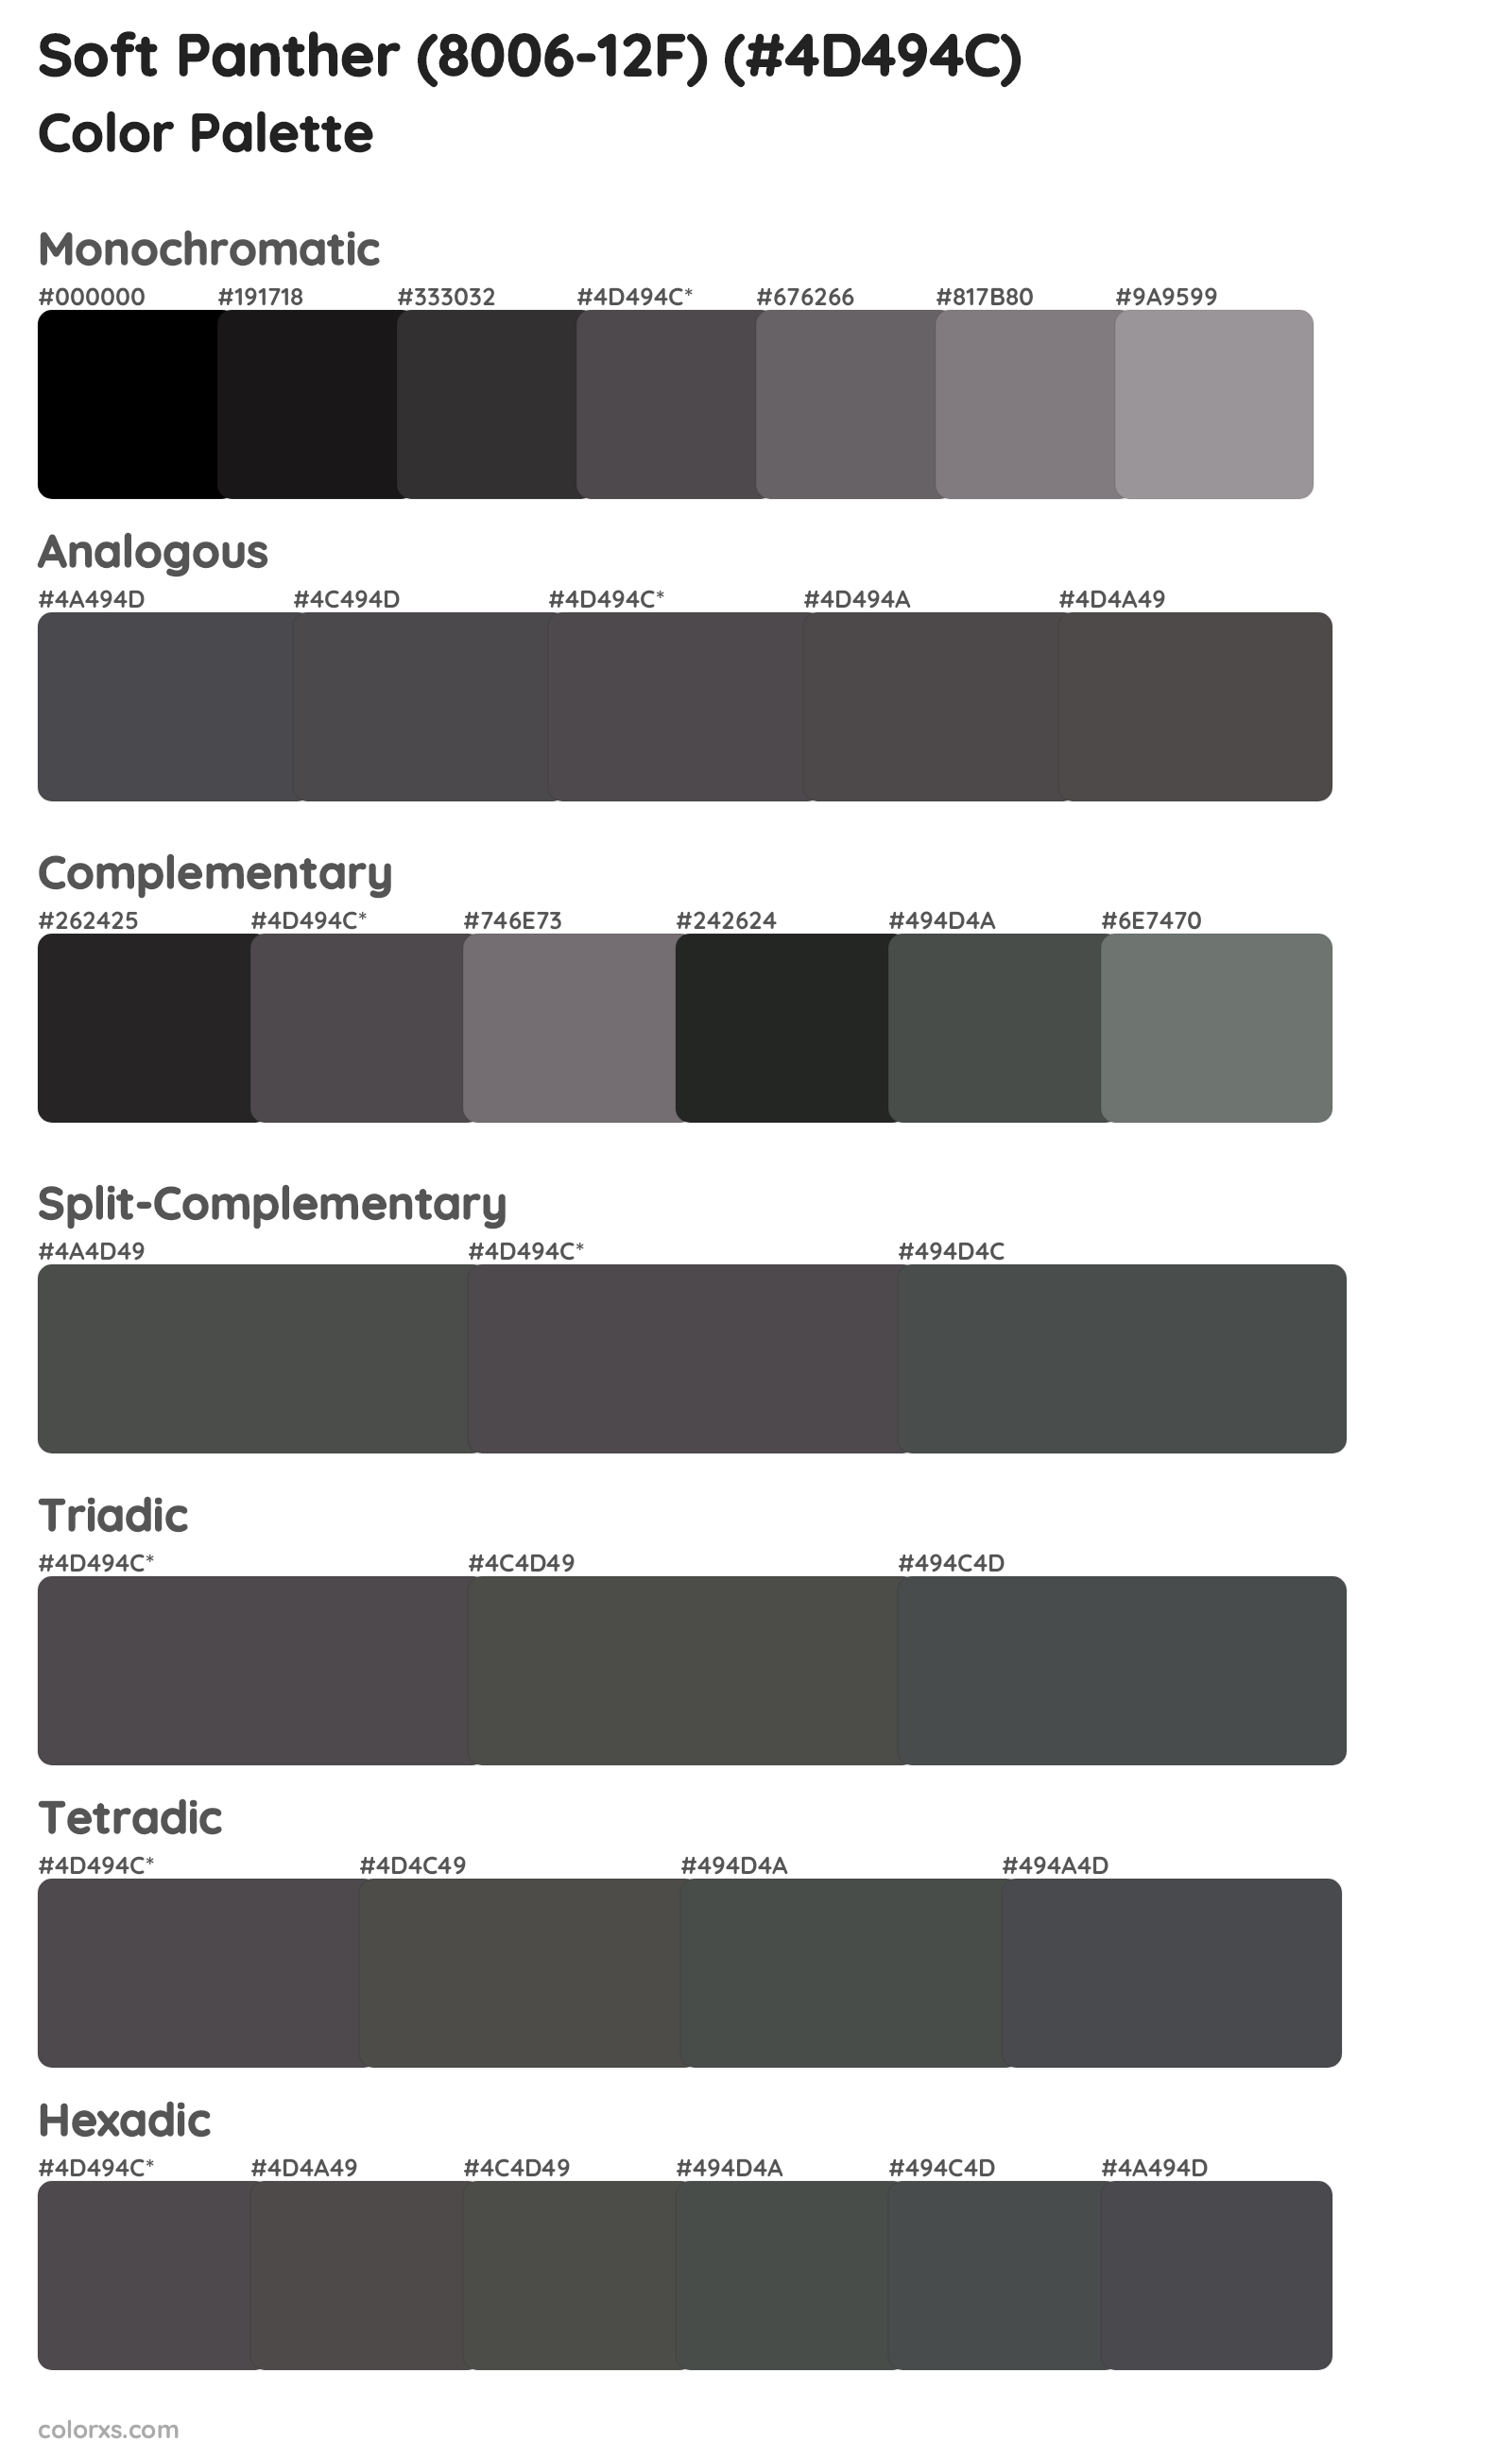 Soft Panther (8006-12F) Color Scheme Palettes